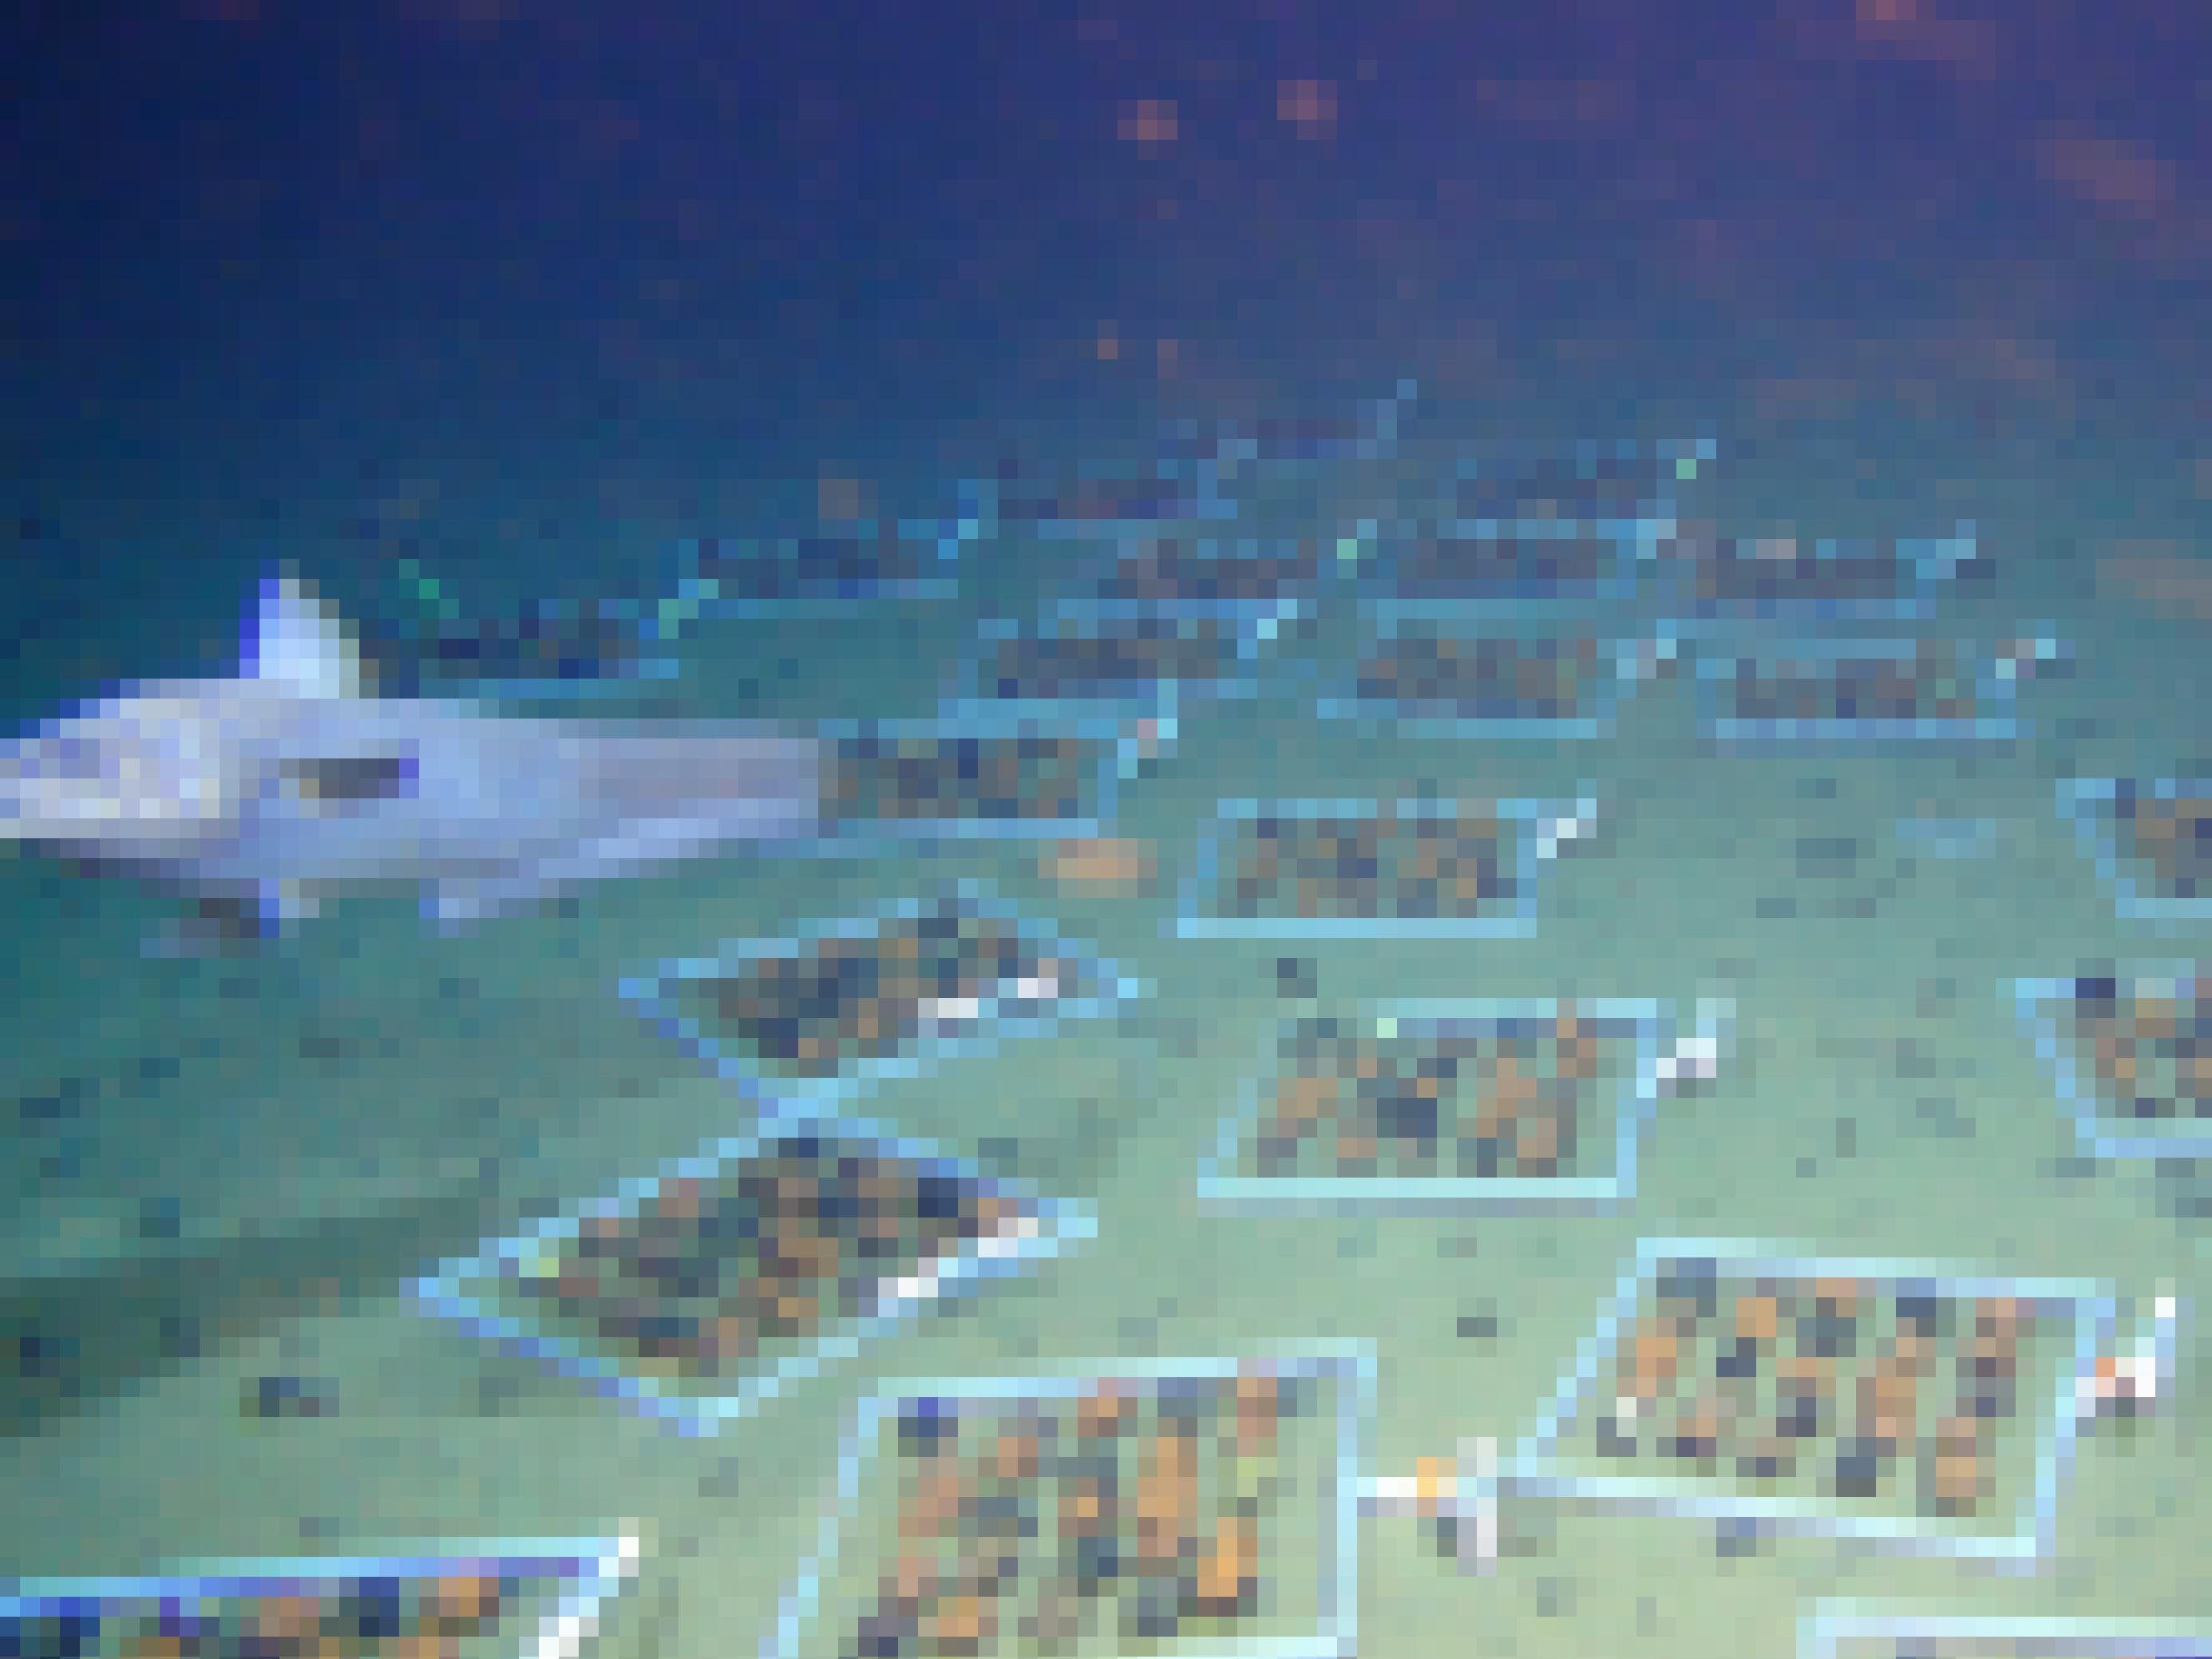 Auf dem Meeresboden liegen Knollen in künstlichen Rahmen, ein Fisch schwimmt aus dem Bild.